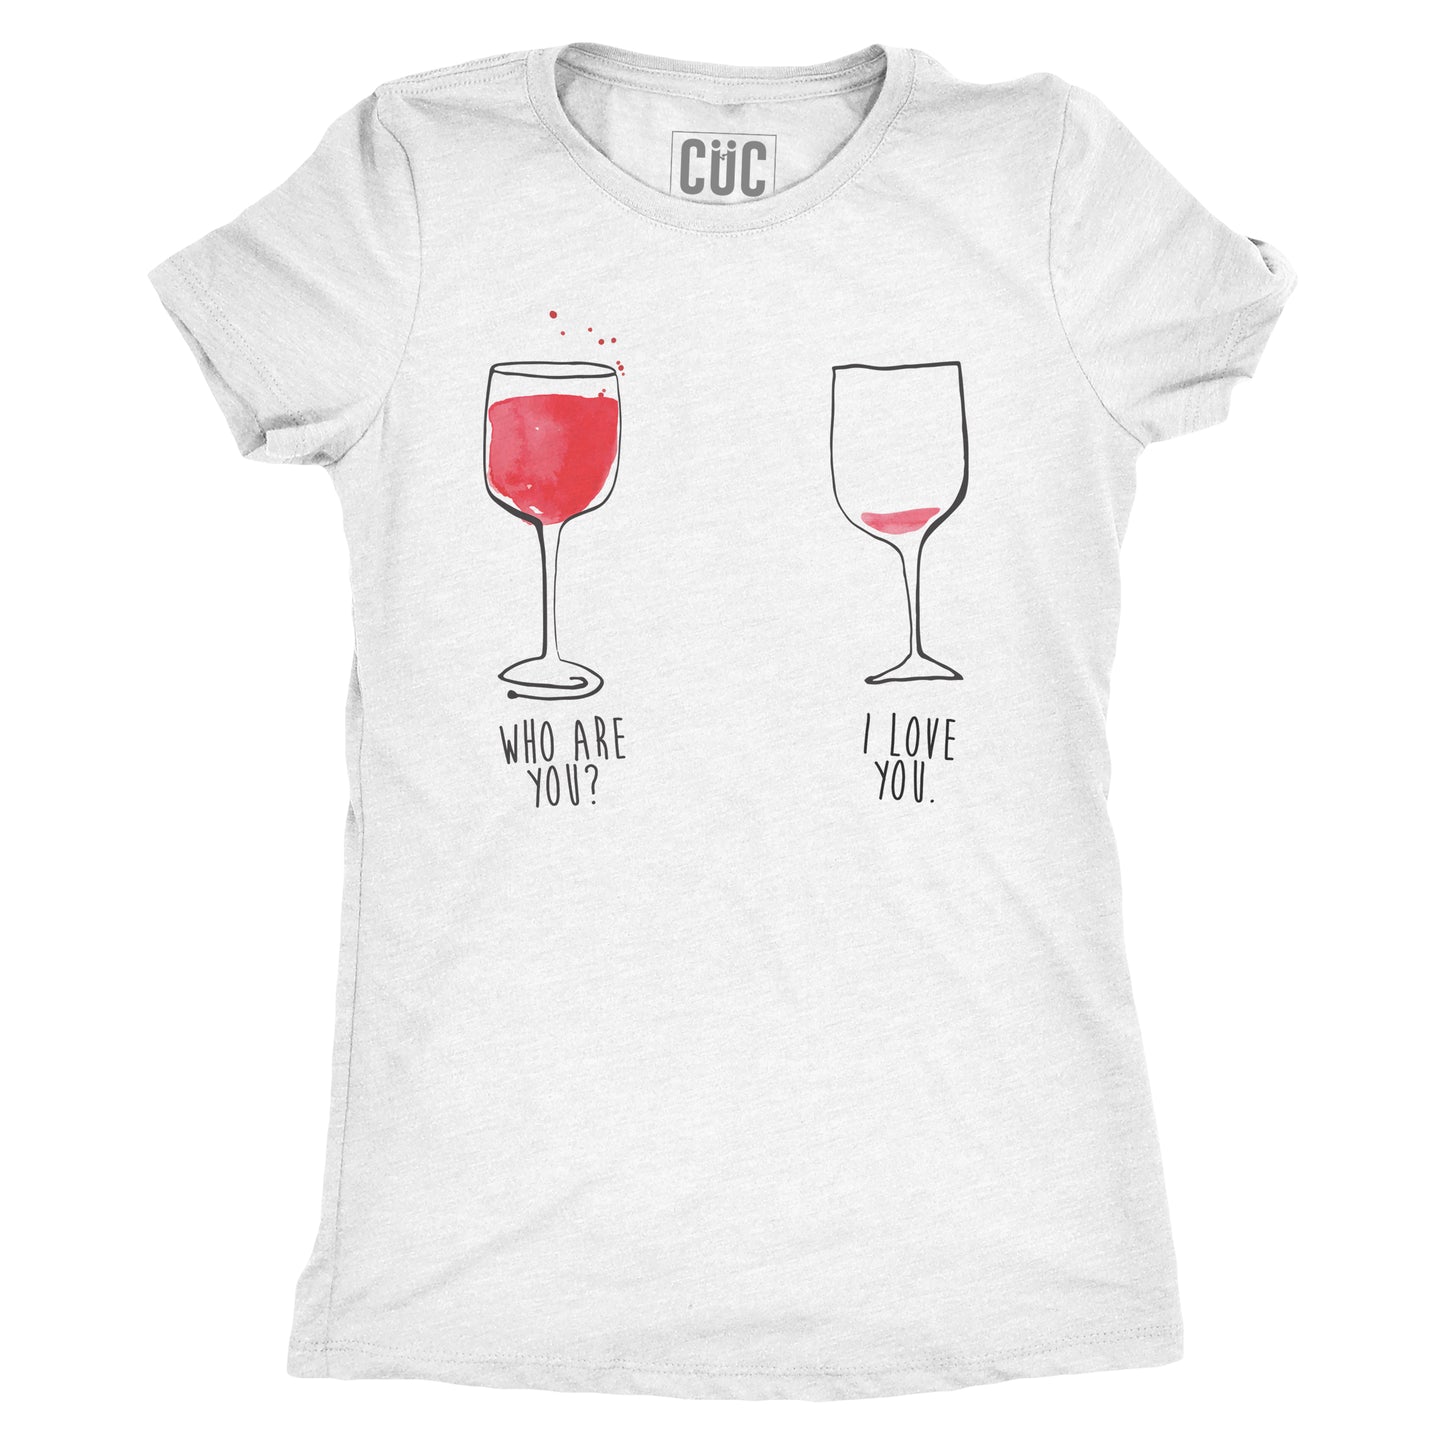 T-Shirt In vino veritas - who are you? i love you - #chooseurcolor - CUC chooseurcolor